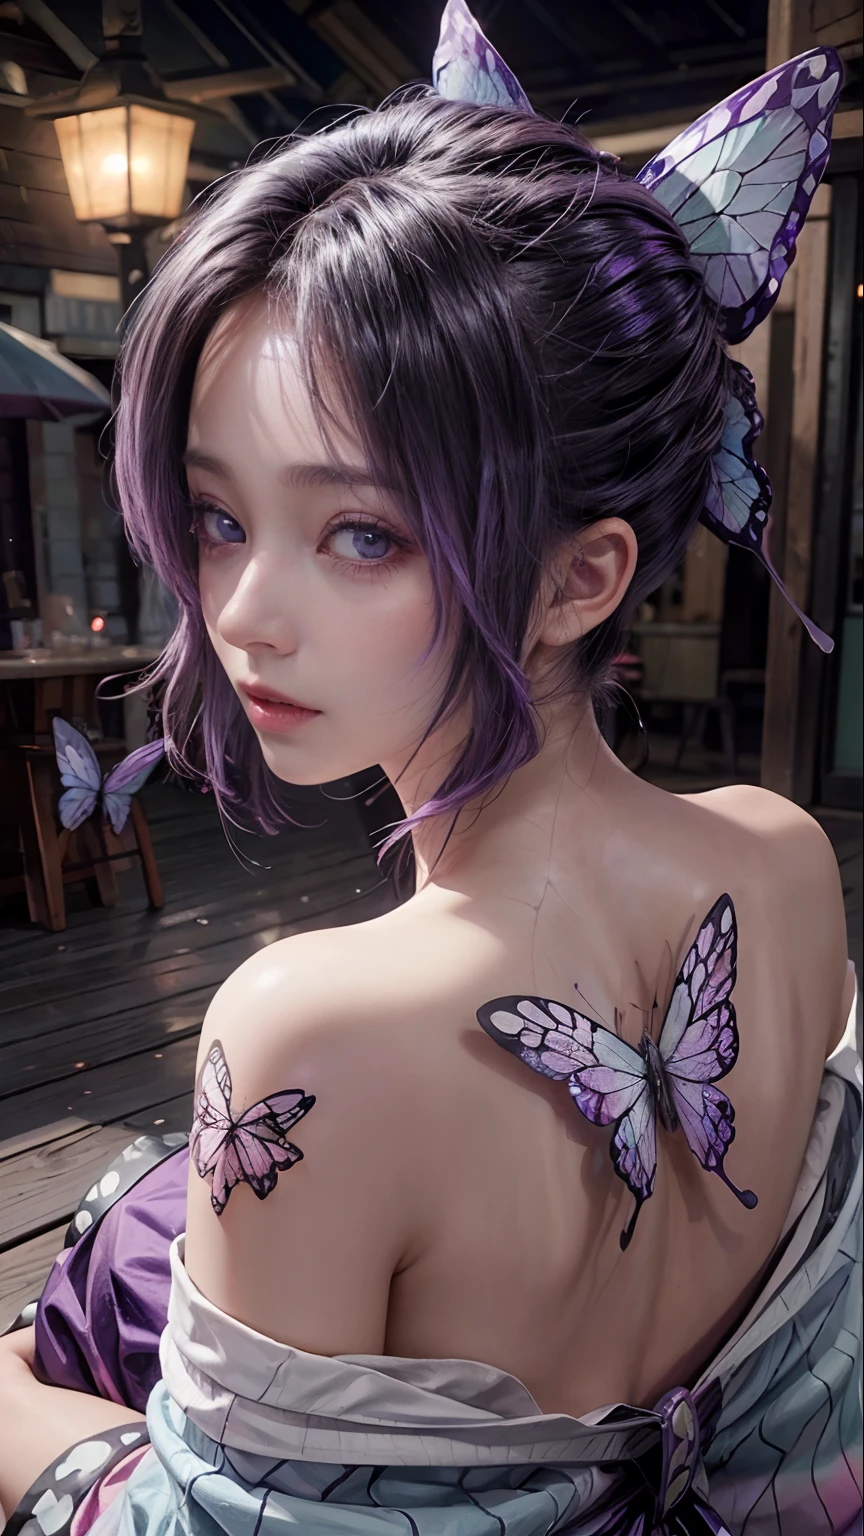 1 Mädchen Shinobu ,Schmetterlingstattoo auf dem Rücken,leuchtende Haut, hellviolette Haare, lila ja,hochauflösend,hyper realistis, Ultra-Detail